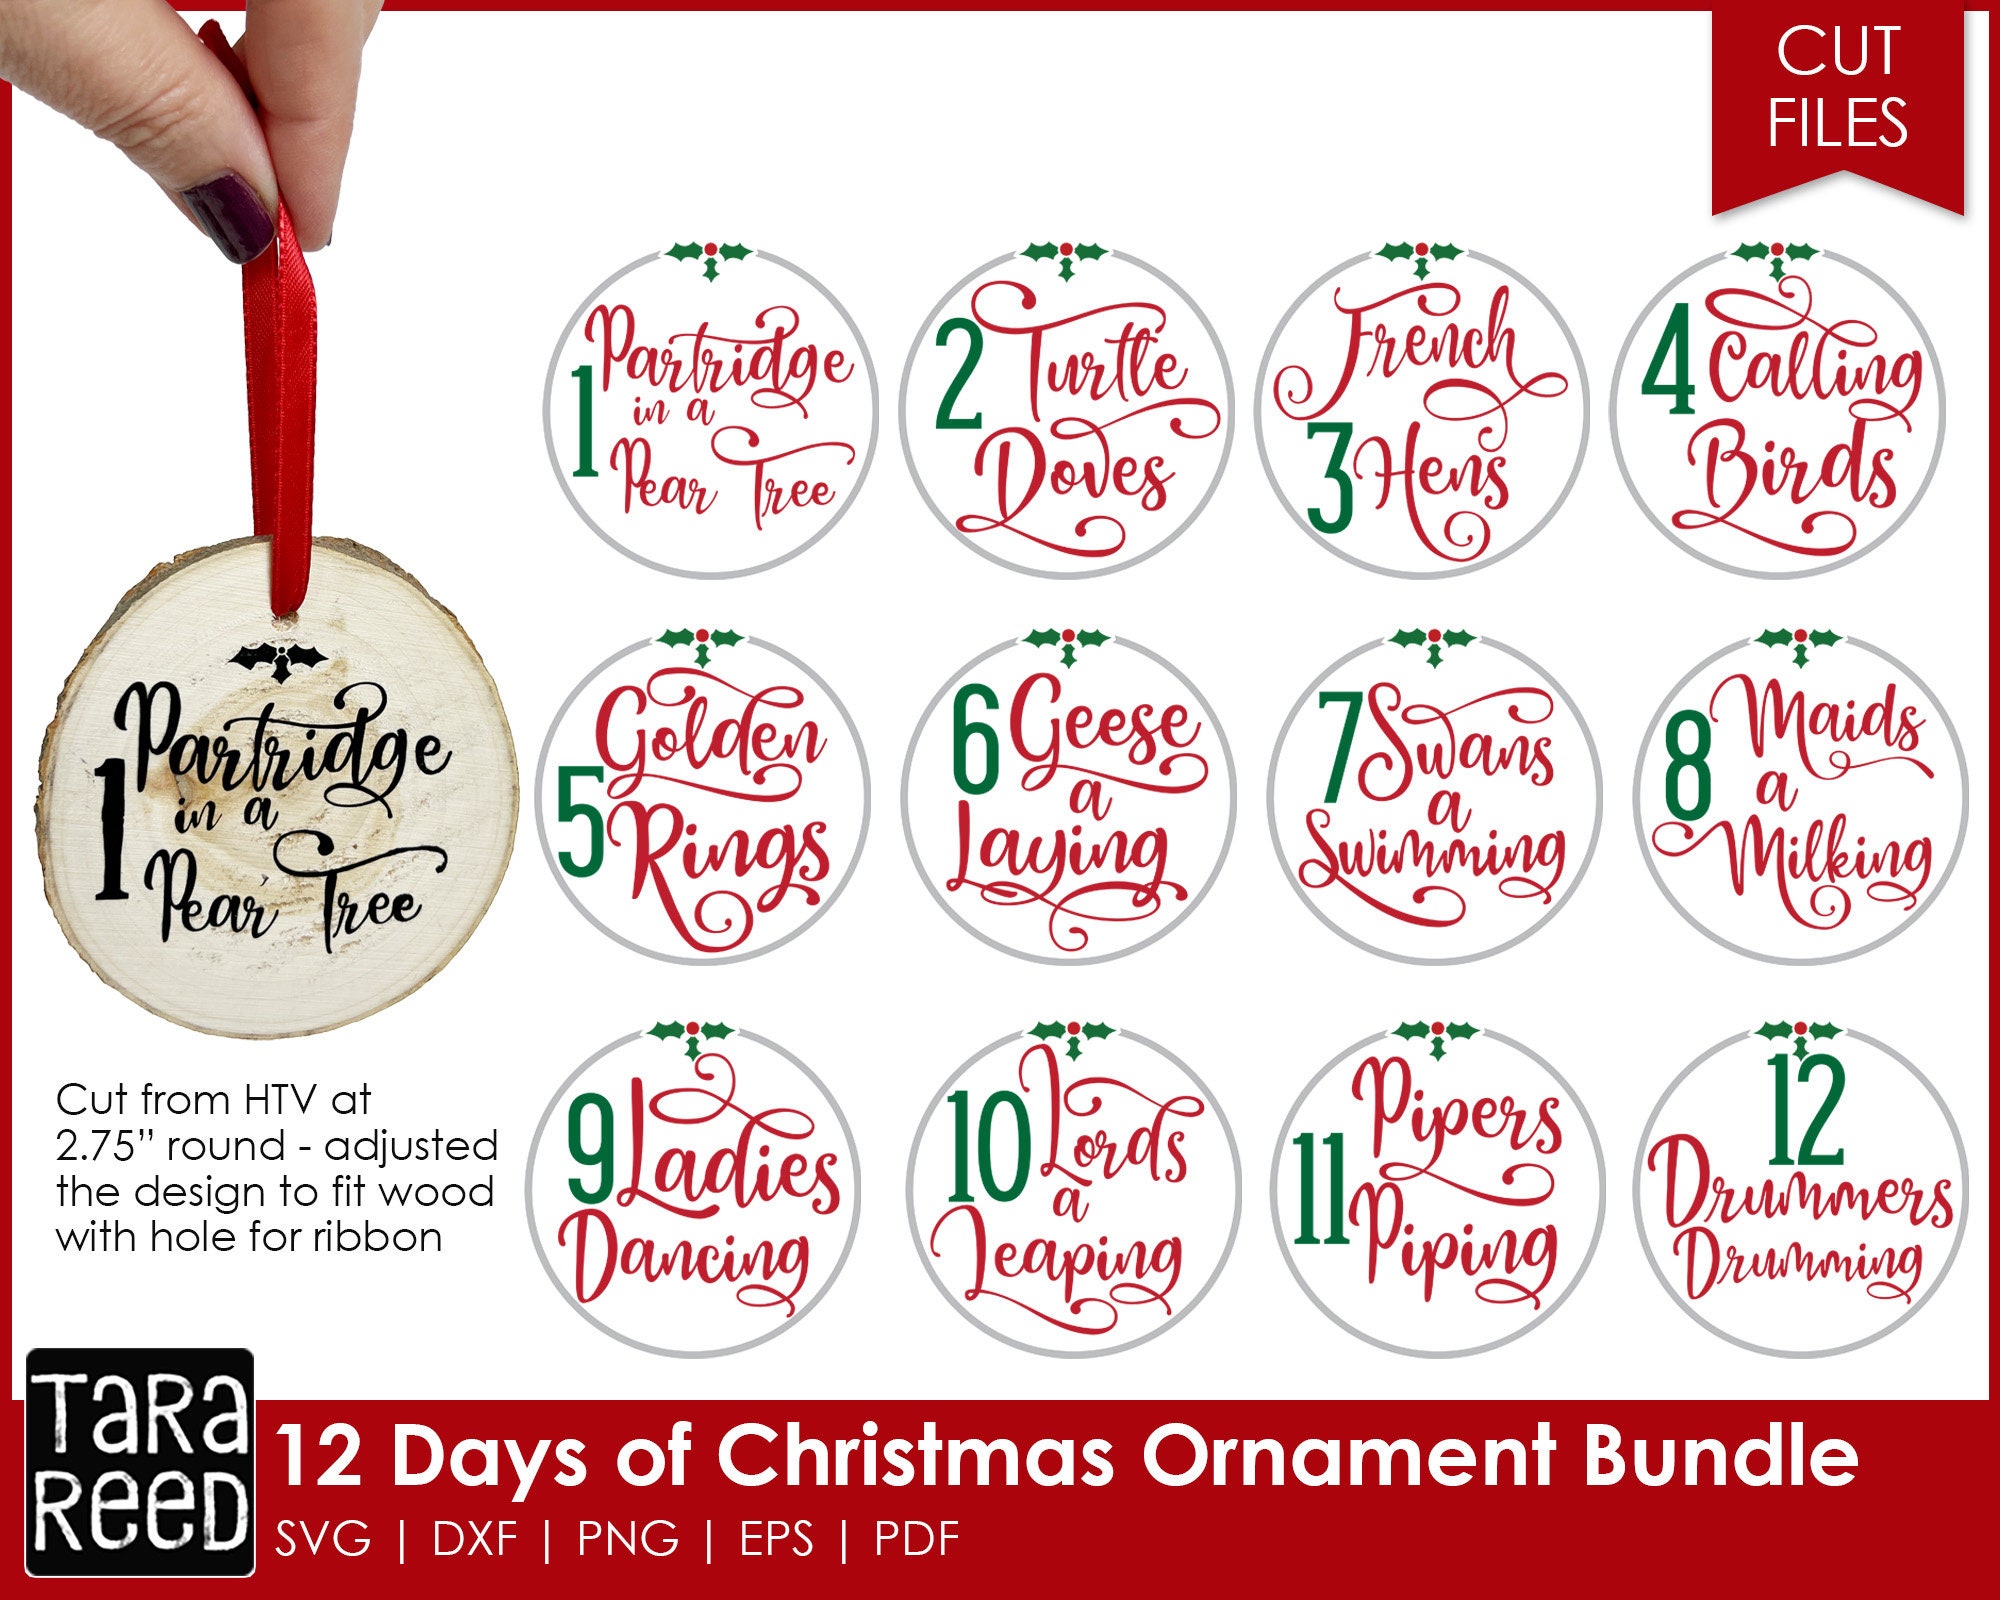 12 Days of Christmas Printable Gift Tags Twelve Days of Christmas